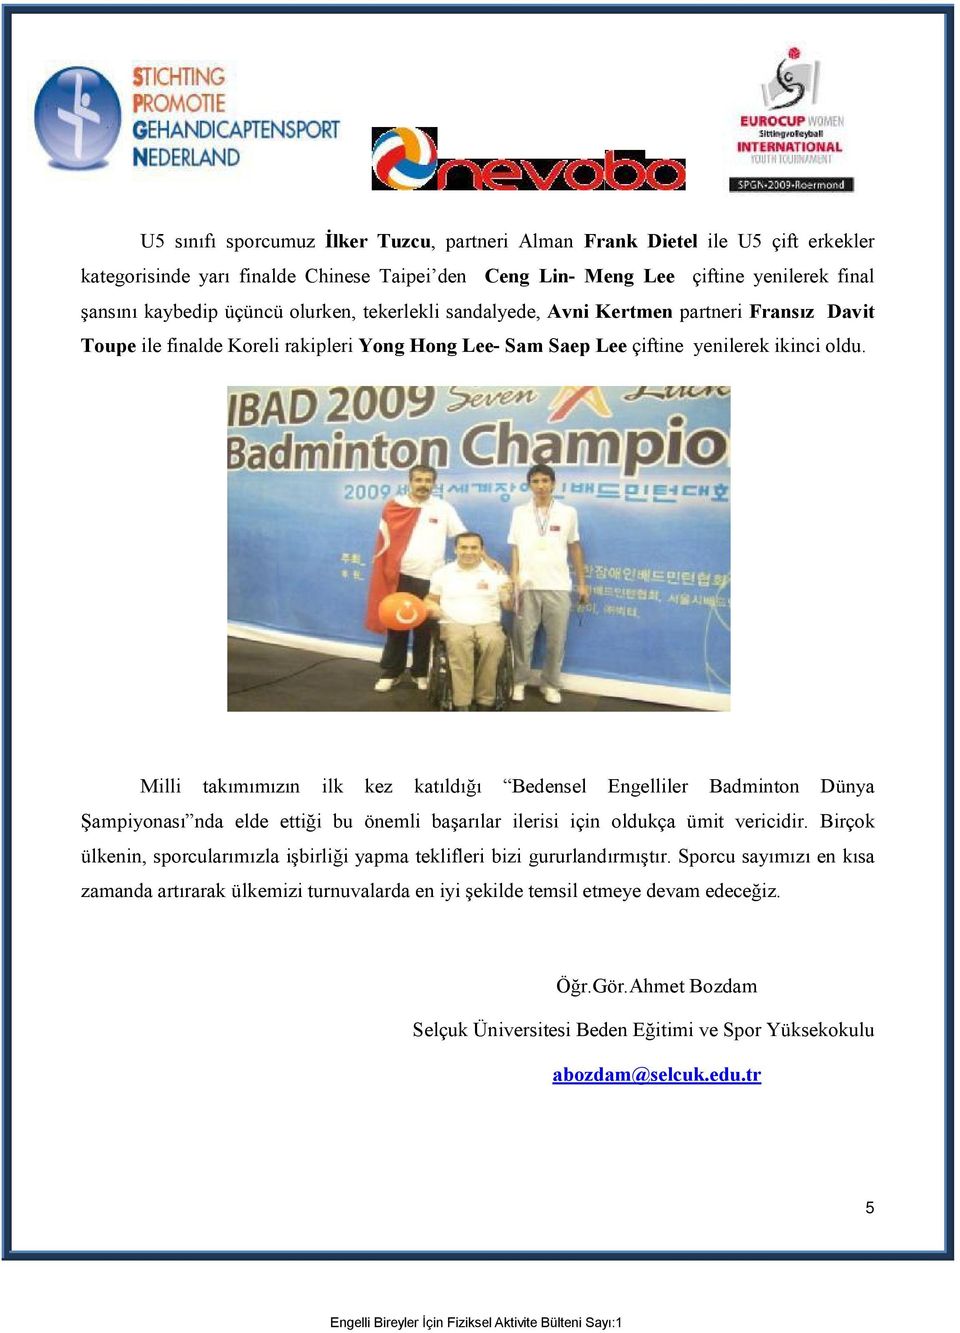 Milli takımımızın ilk kez katıldığı Bedensel Engelliler Badminton Dünya Şampiyonası nda elde ettiği bu önemli başarılar ilerisi için oldukça ümit vericidir.